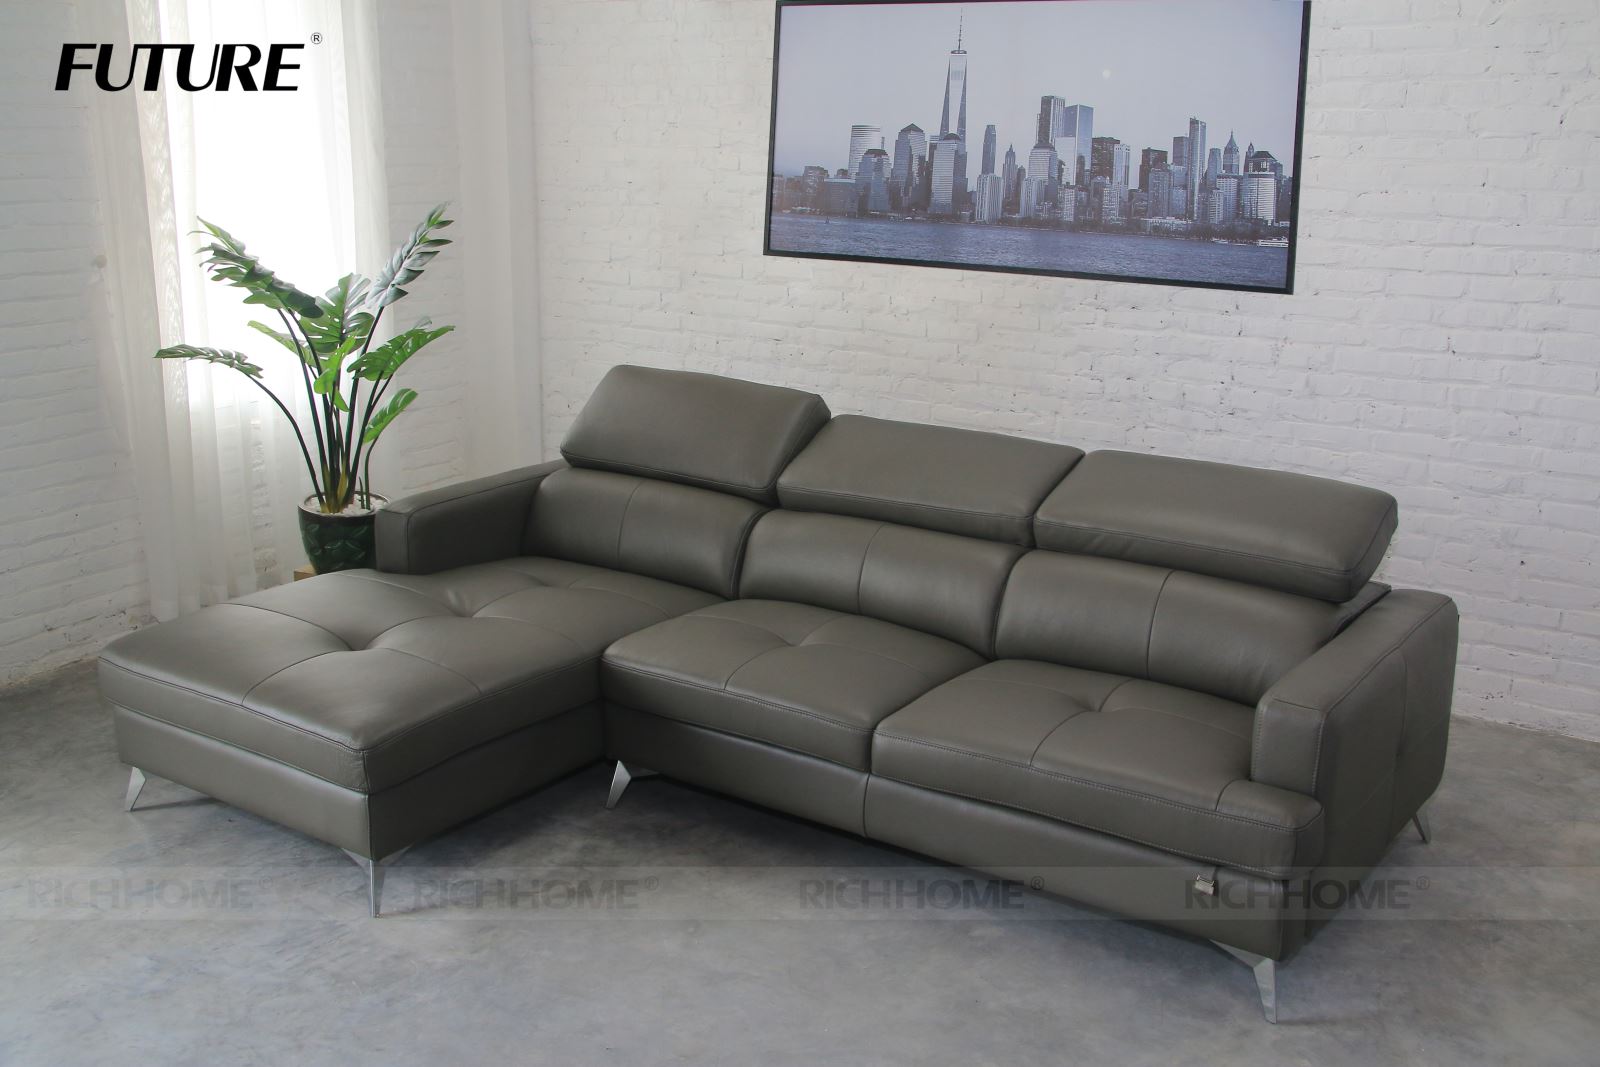 Sofa góc - lựa chọn tuyệt vời cho căn phòng nhỏ - Ảnh 4